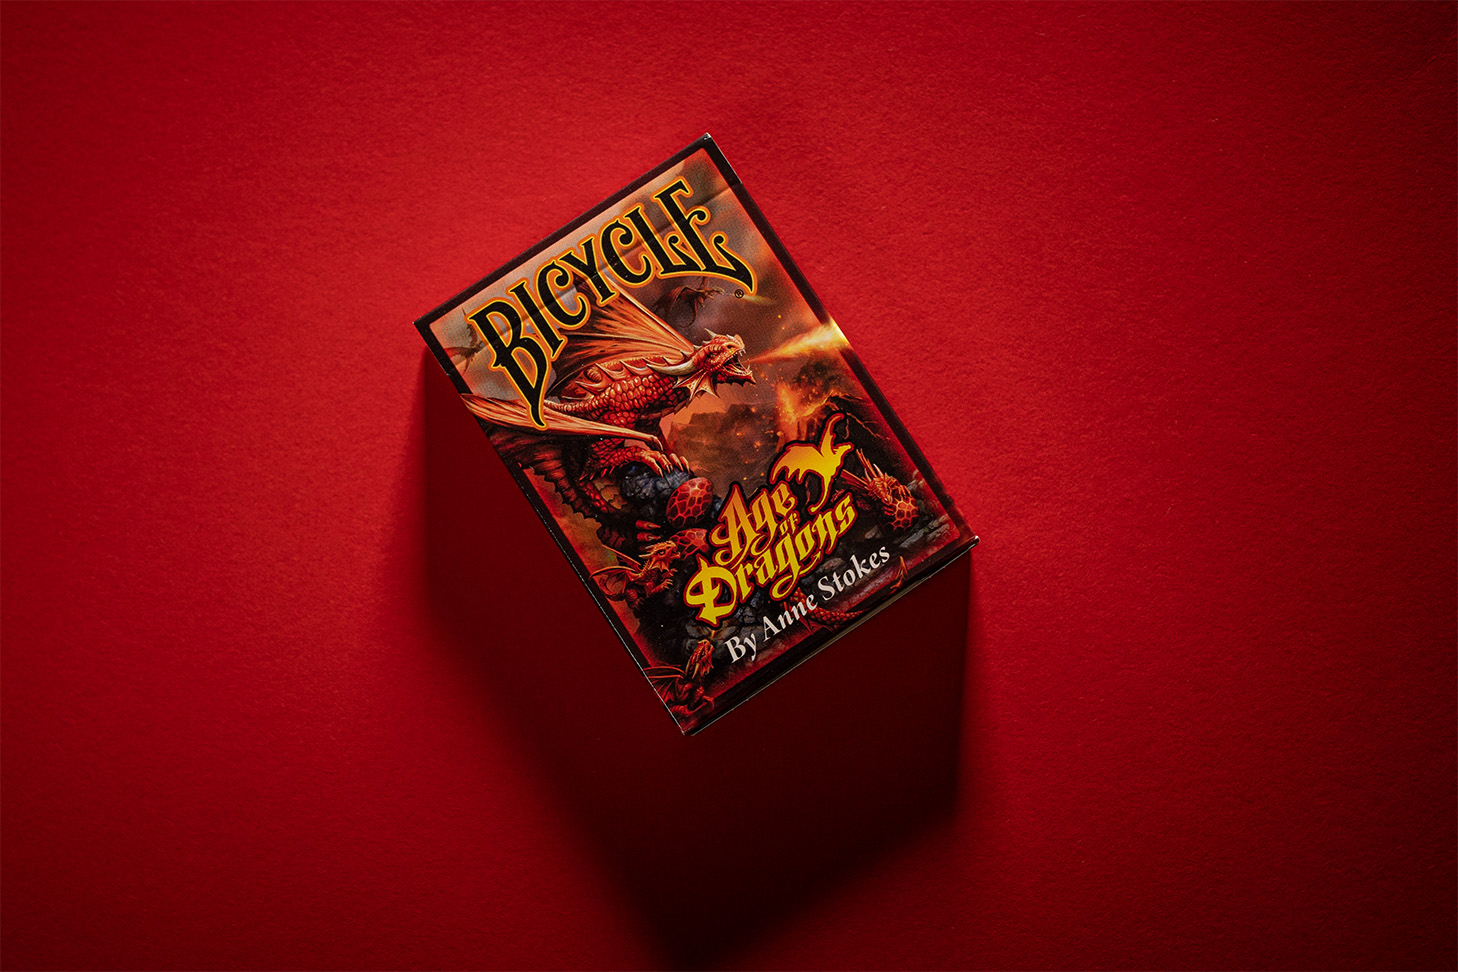 Die Bicycle® Age of Dragons Kartenschachtel liegt aus der Vogelperspektive sichtbar auf einem roten Hintergrund. Das erstklassige Design der Spielkarten zeigt majestätische Drachen in voller Pracht und eignet sich perfekt für gute Kartenspiele, Zauberkarten und Magie. Holen Sie sich jetzt diese exklusiven Spielkarten für unvergessliche Spieleabende!